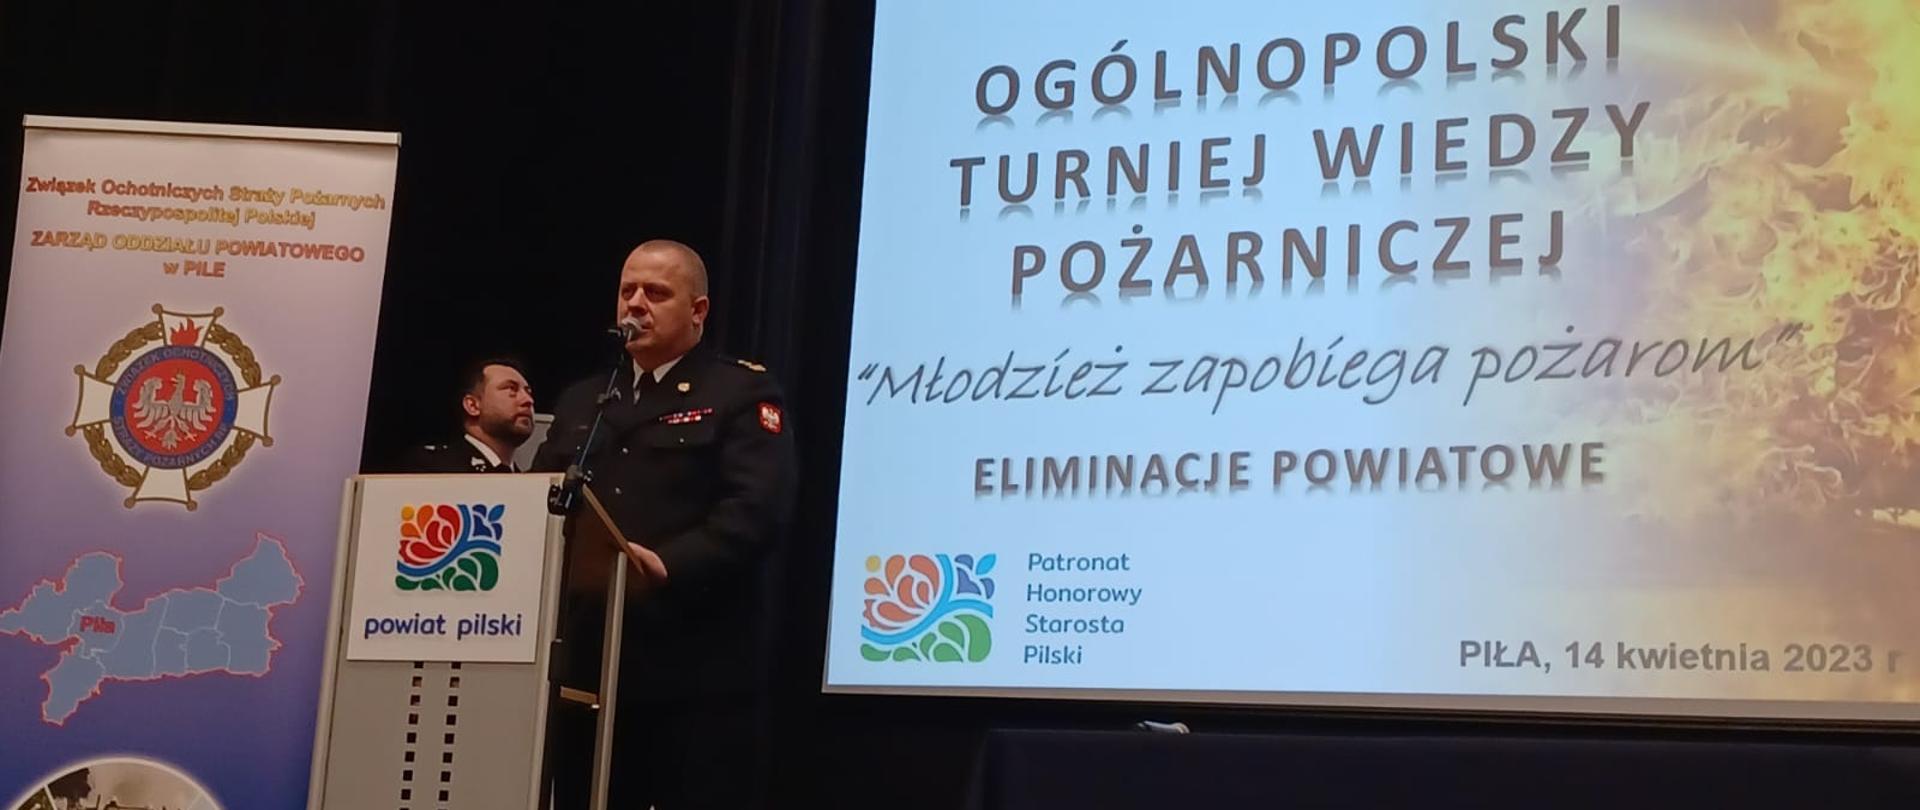 Na zdjęciu widnieją eliminacje powiatowe Ogólnopolskiego Turnieju Wiedzy Pożarniczej. Zajęcia odbywają się w sali, jest dzień, pochmurno. 